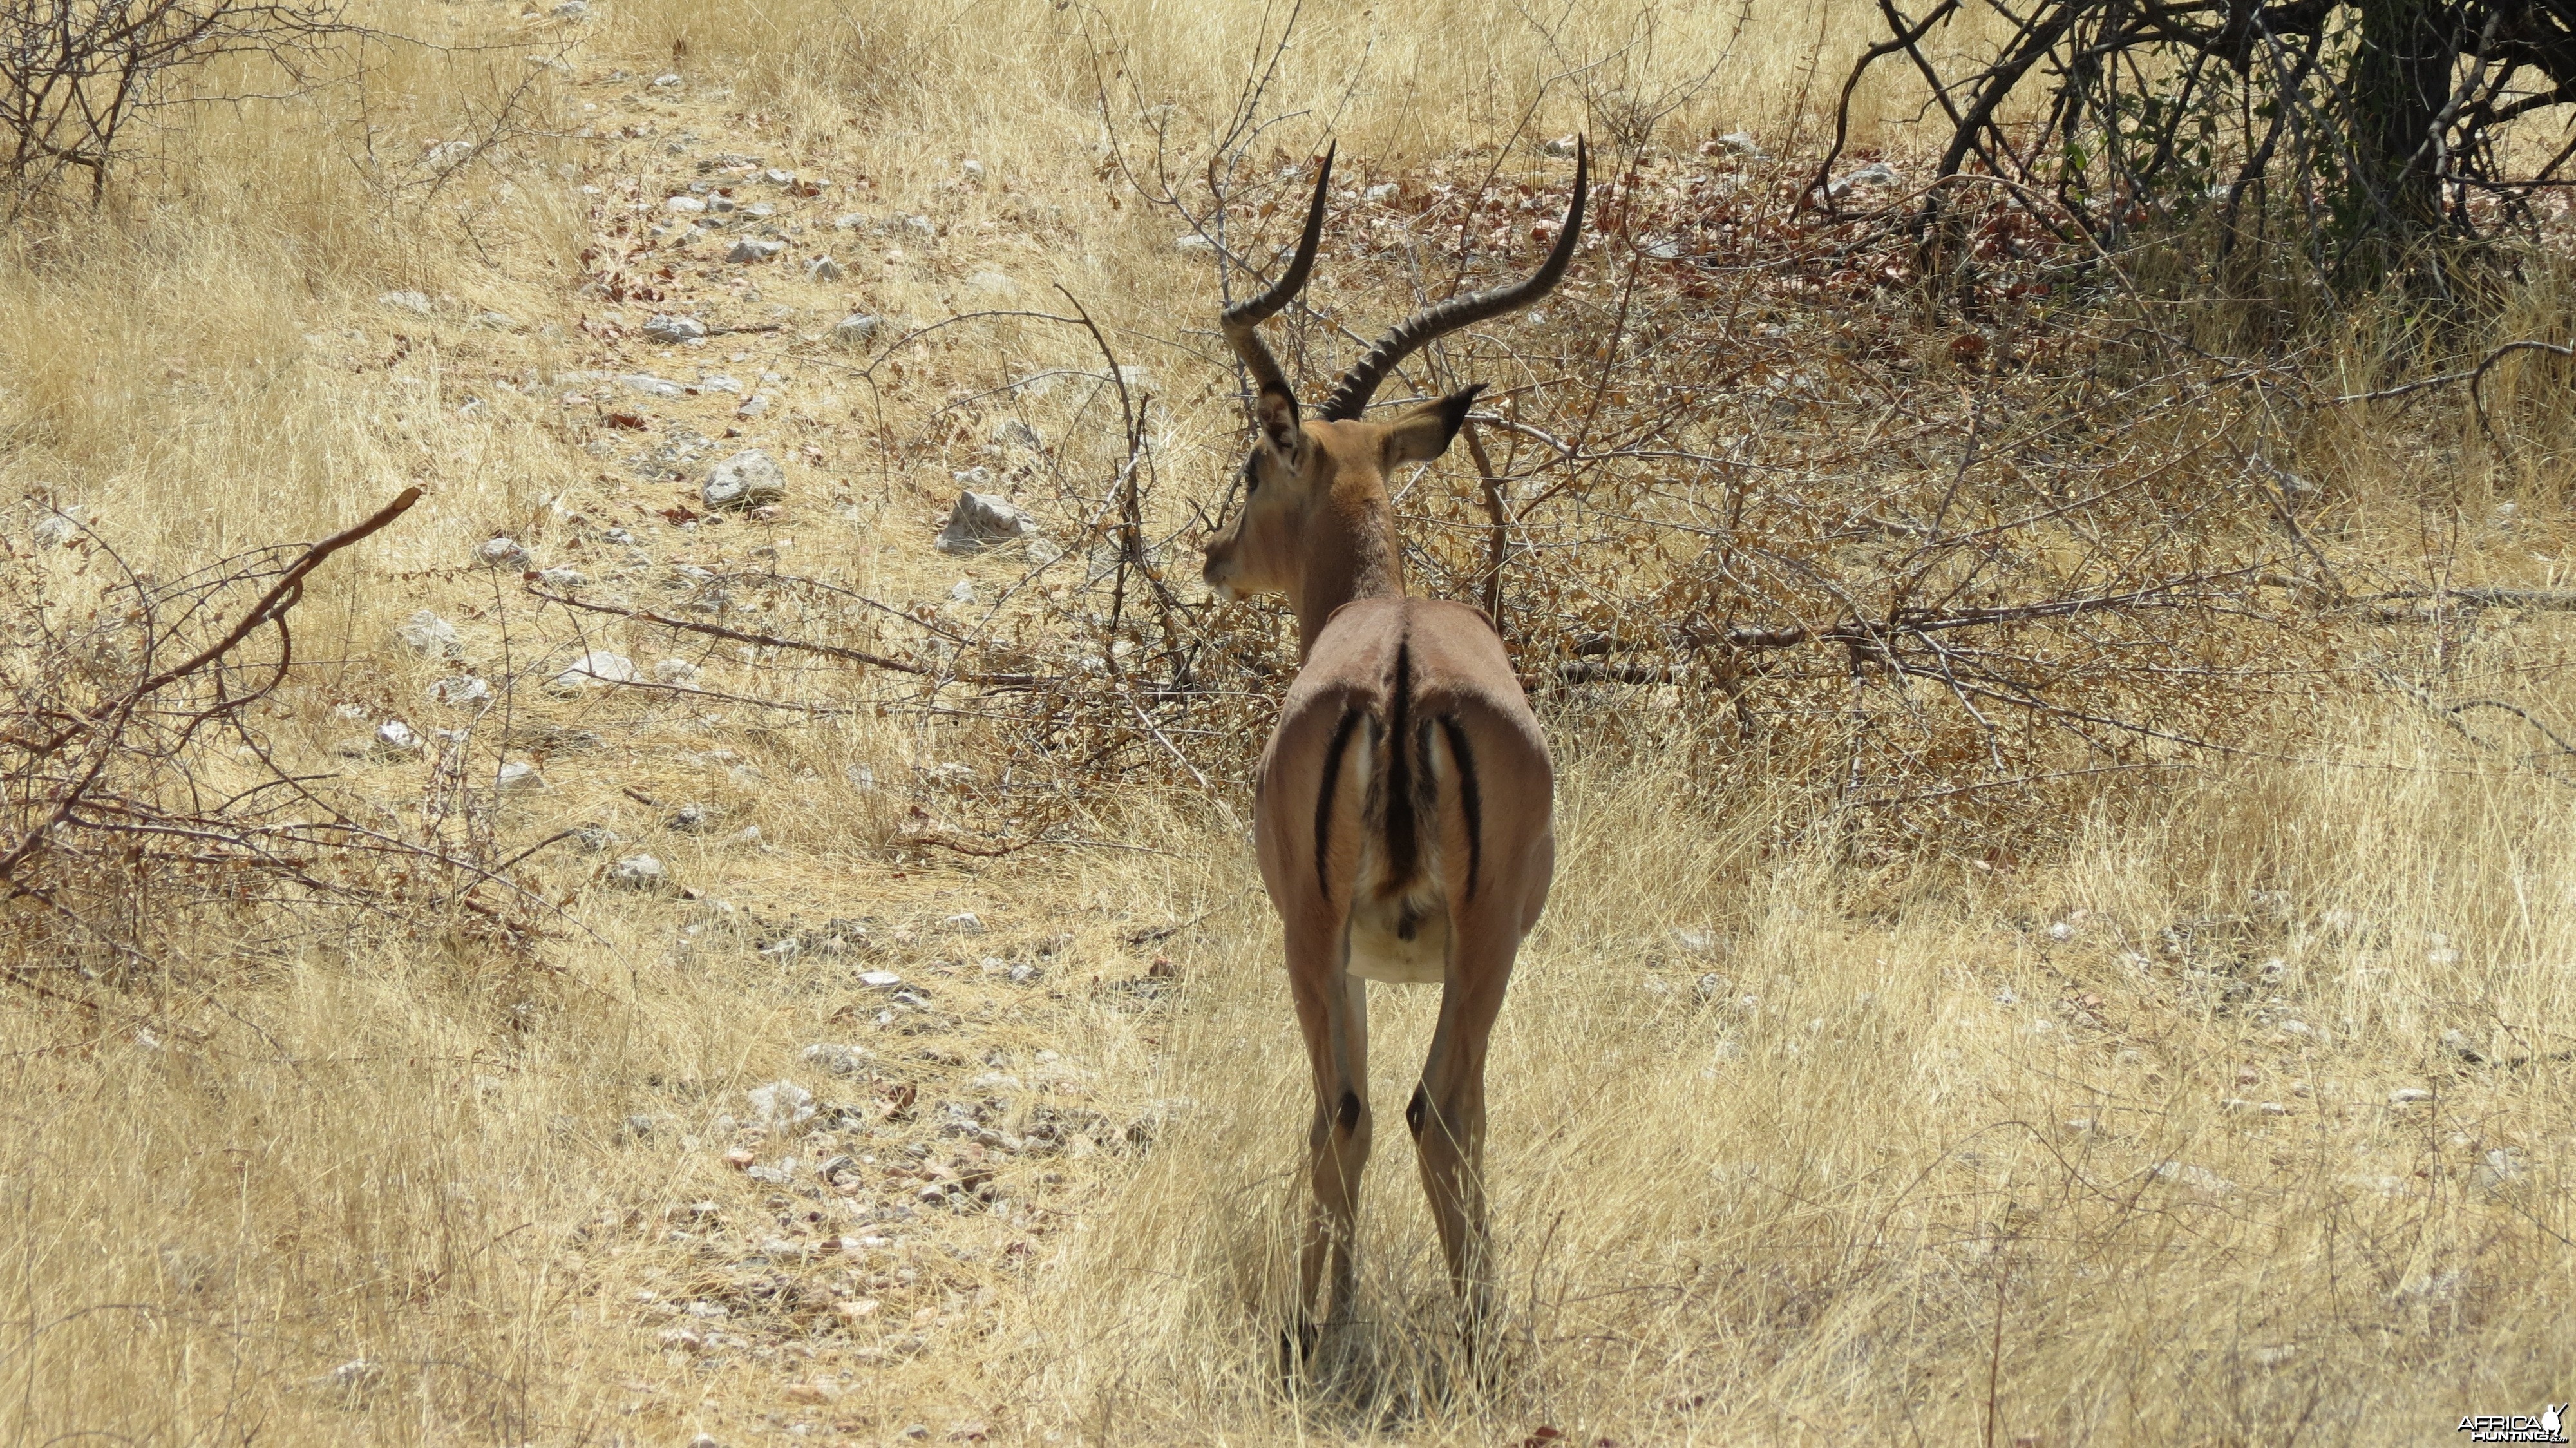 Black-Faced Impala at Etosha National Park